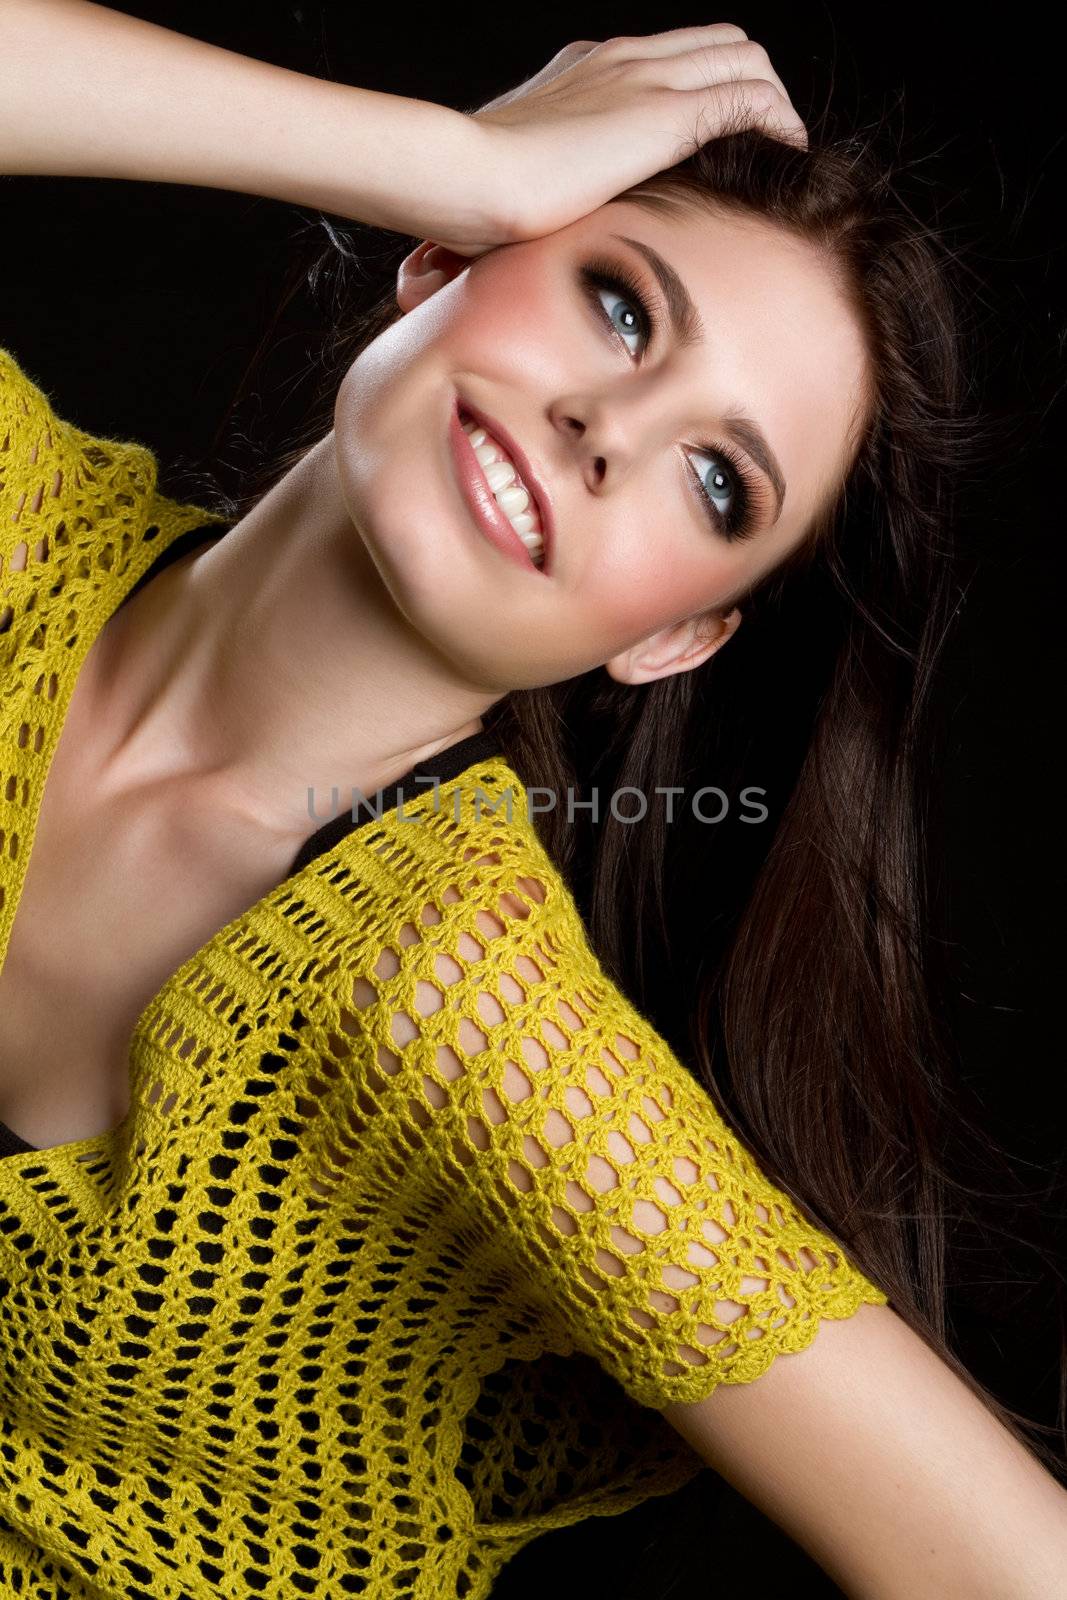 Beautiful smiling young teen girl